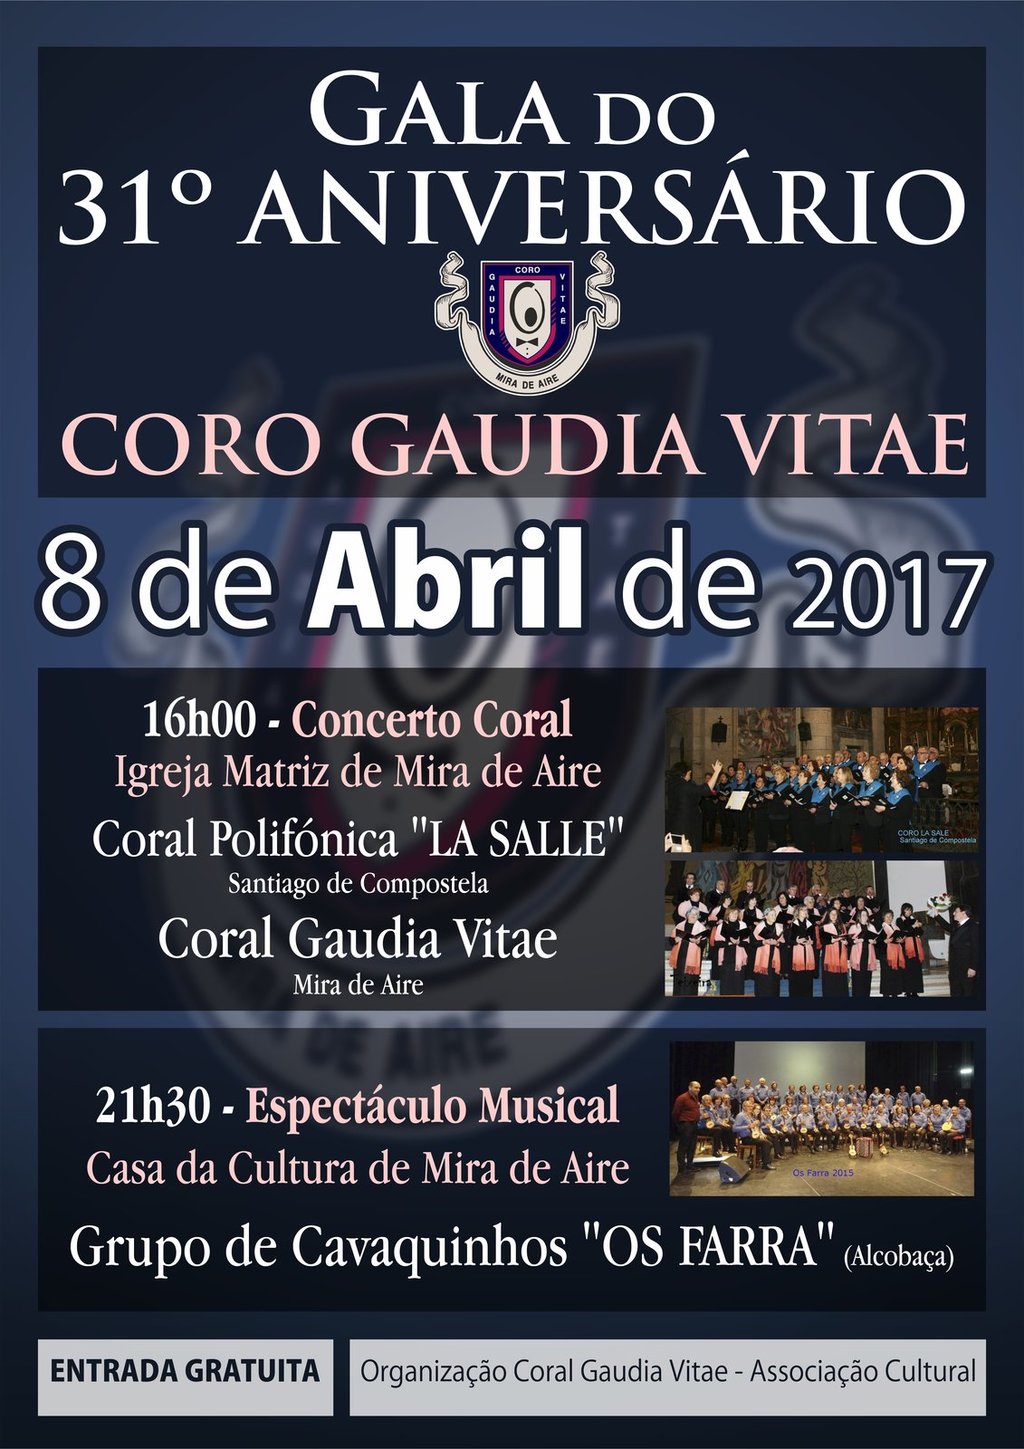 Gala do 31º Aniversário do Coro Gaudia Vitae